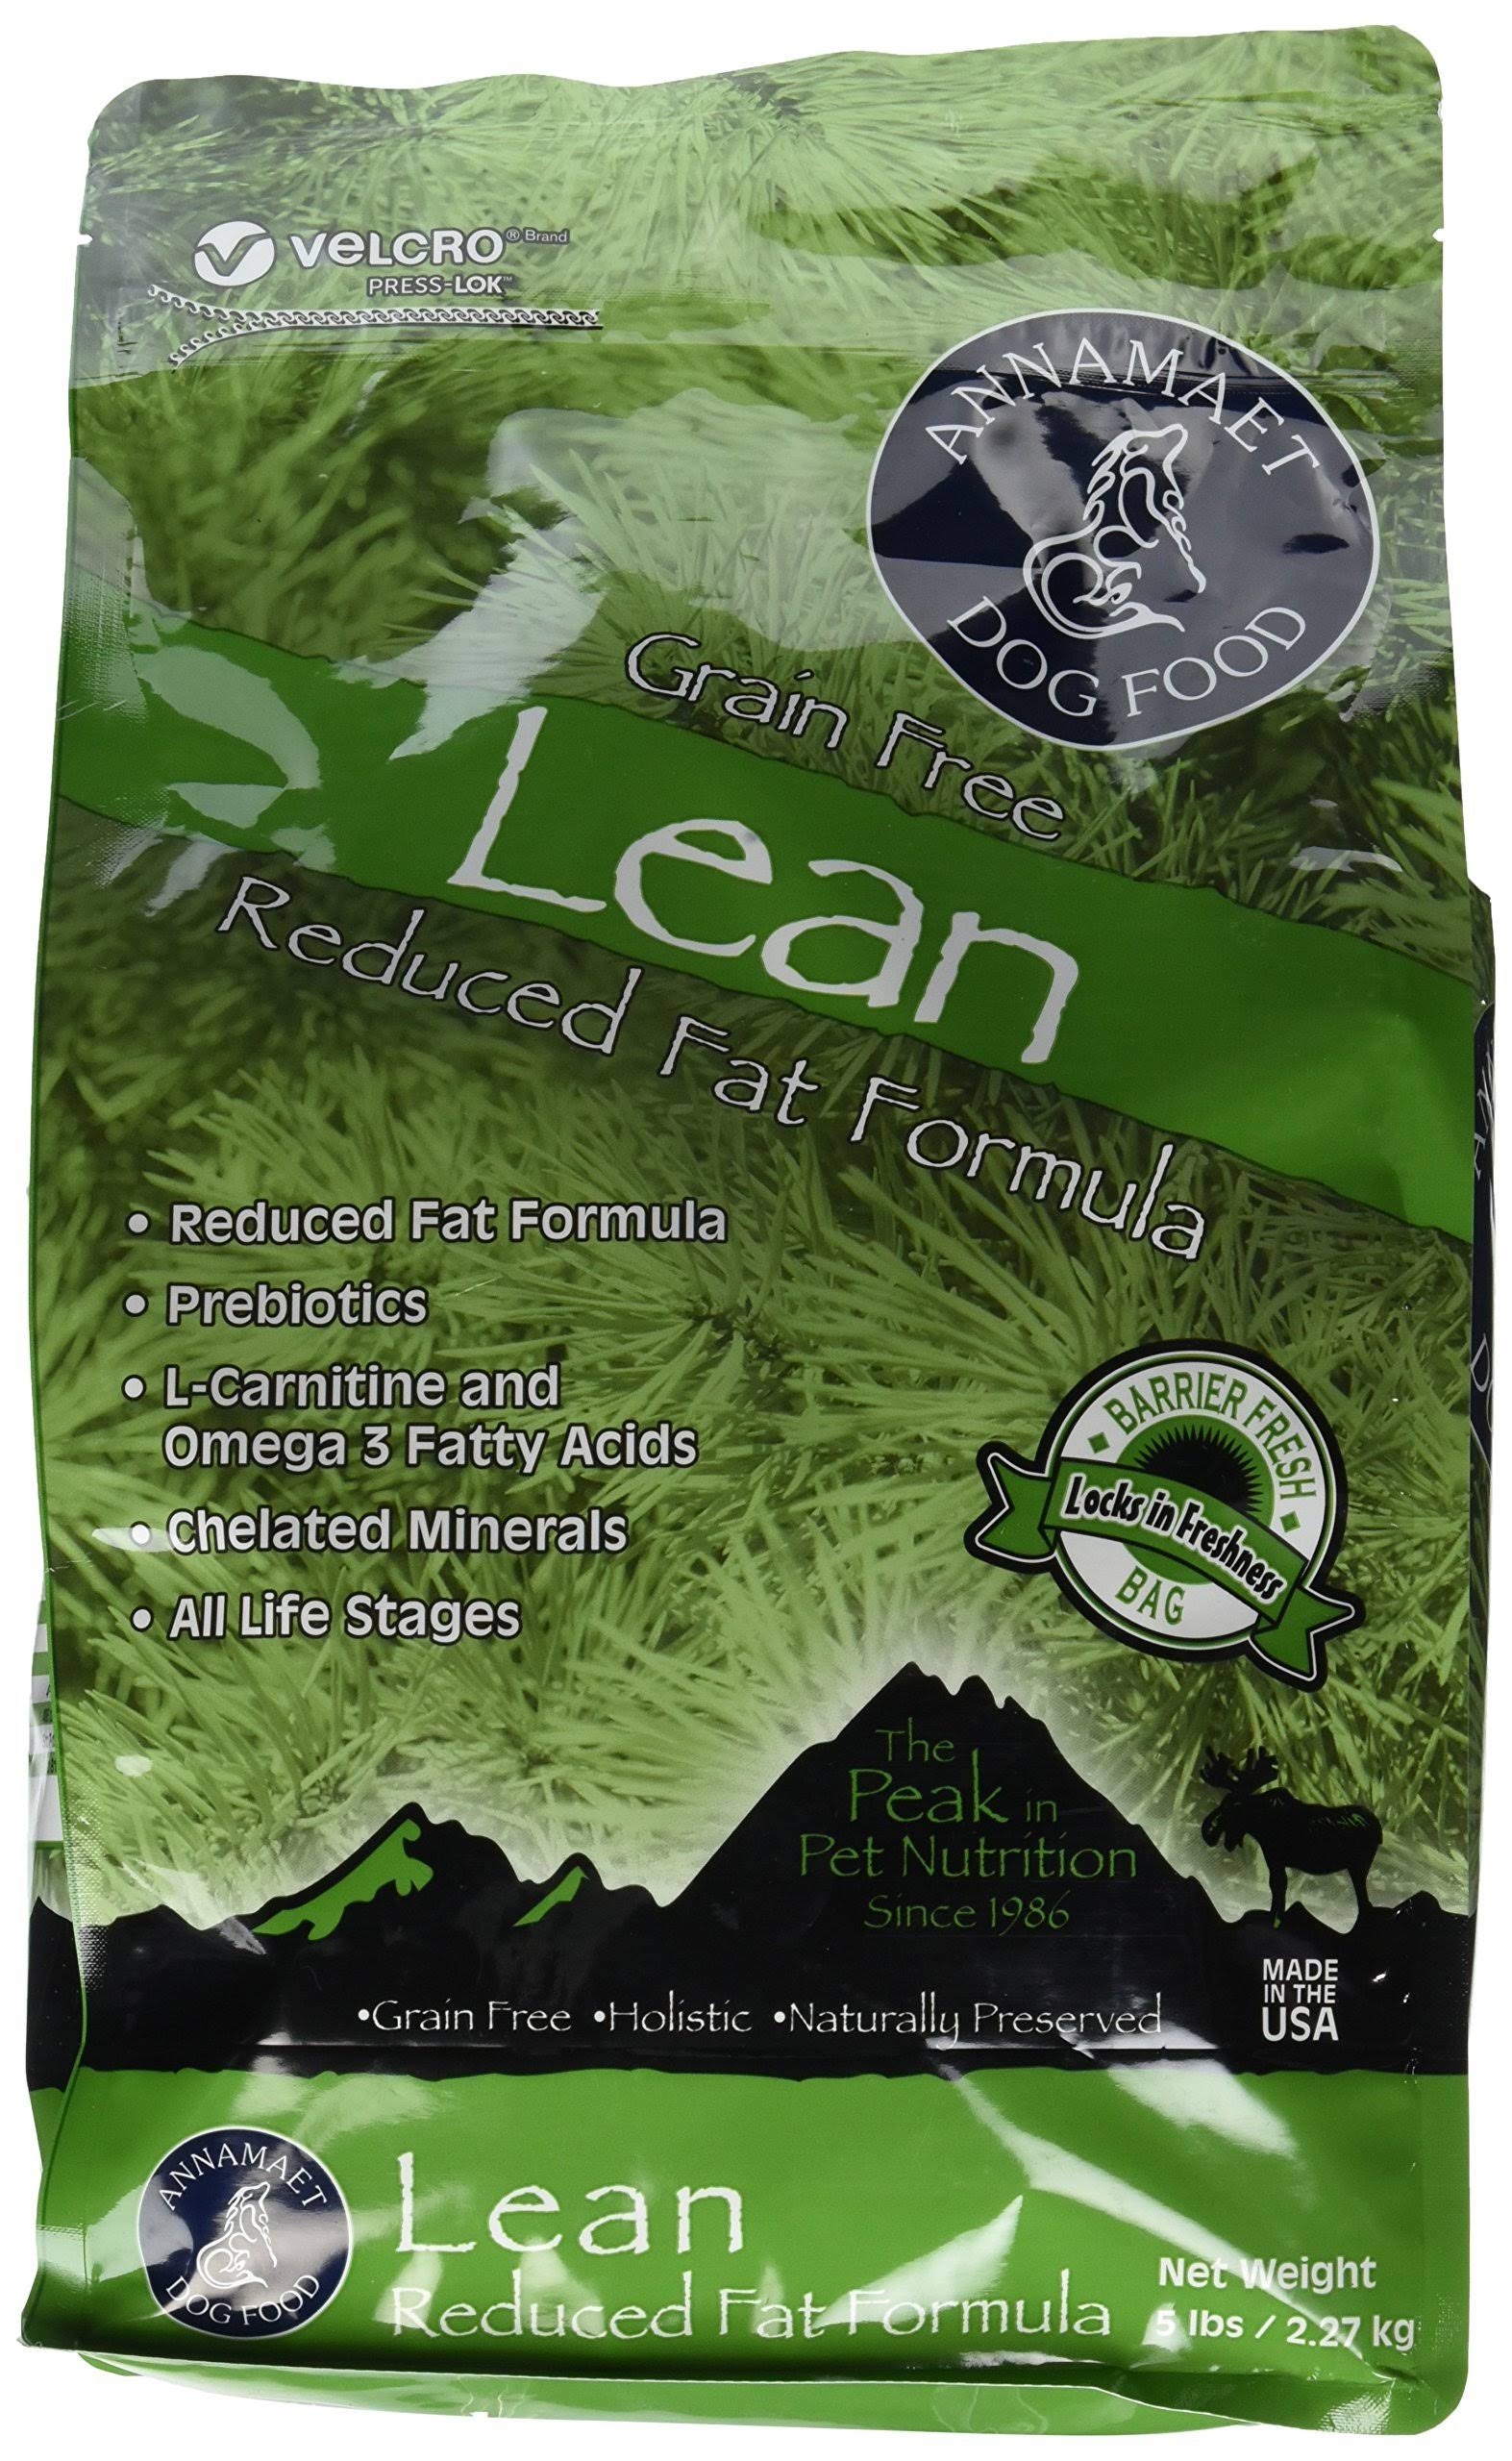 Annamaet Grain Free Lean Reduced Fat Formula Dog Food - 5lb